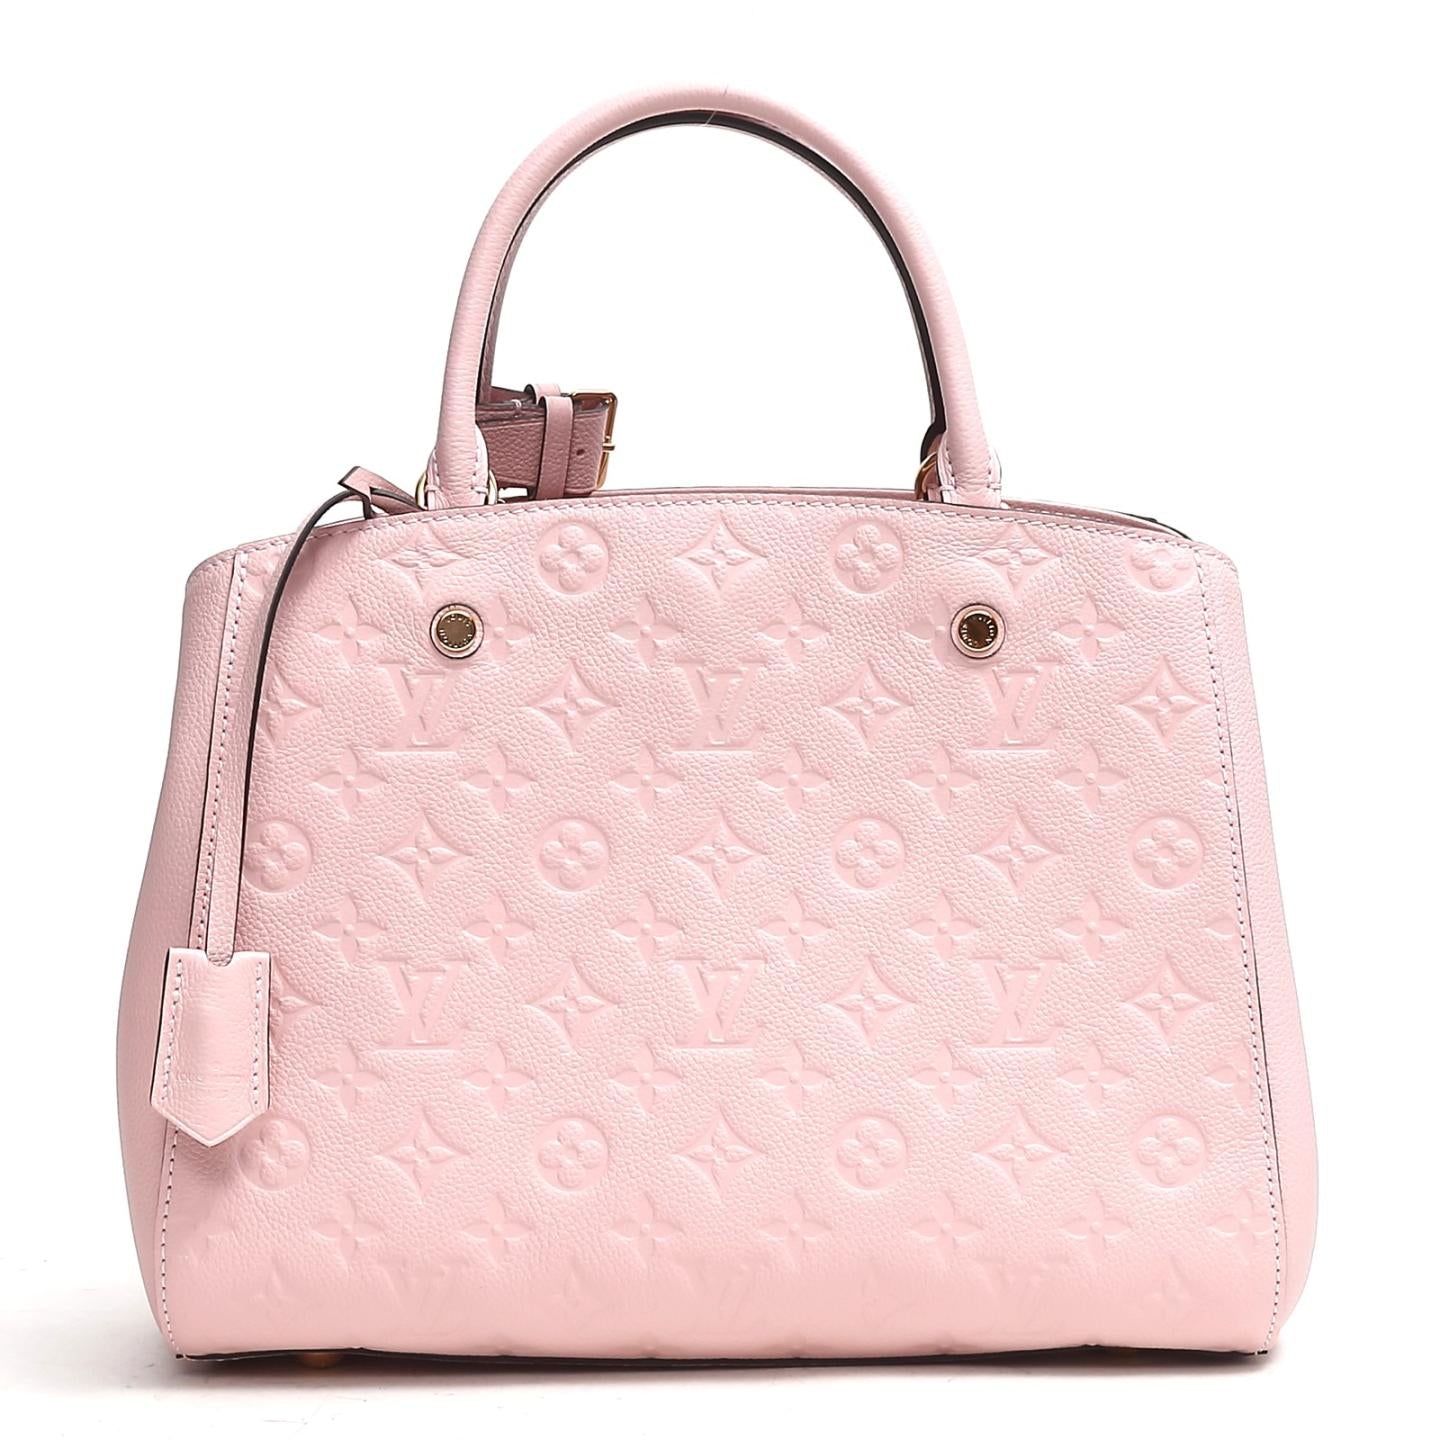 Bolsos y accesorios de lujo en colores flúor de Louis Vuitton para